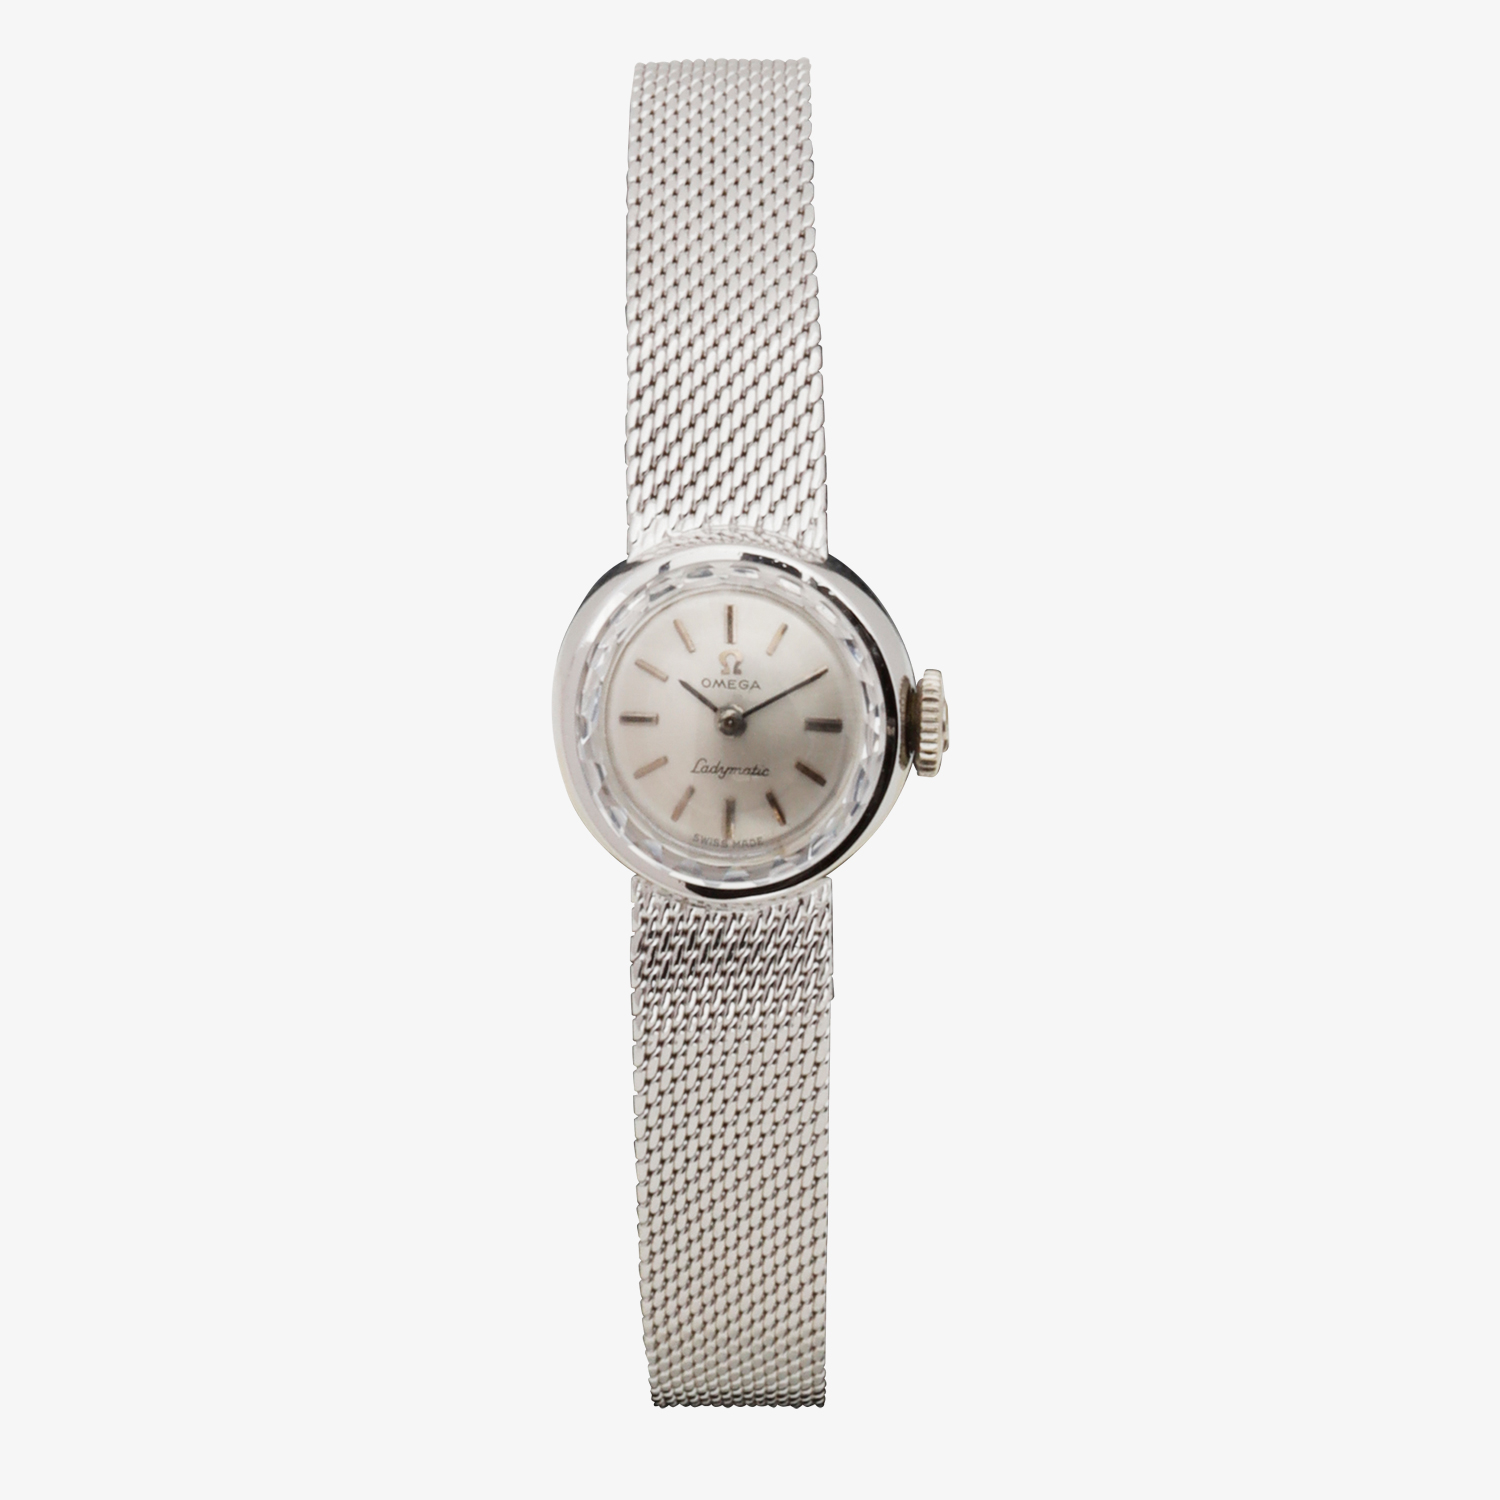 OMEGA｜14KWG Ladymatic - 60's｜OMEGA (Vintage Watch)